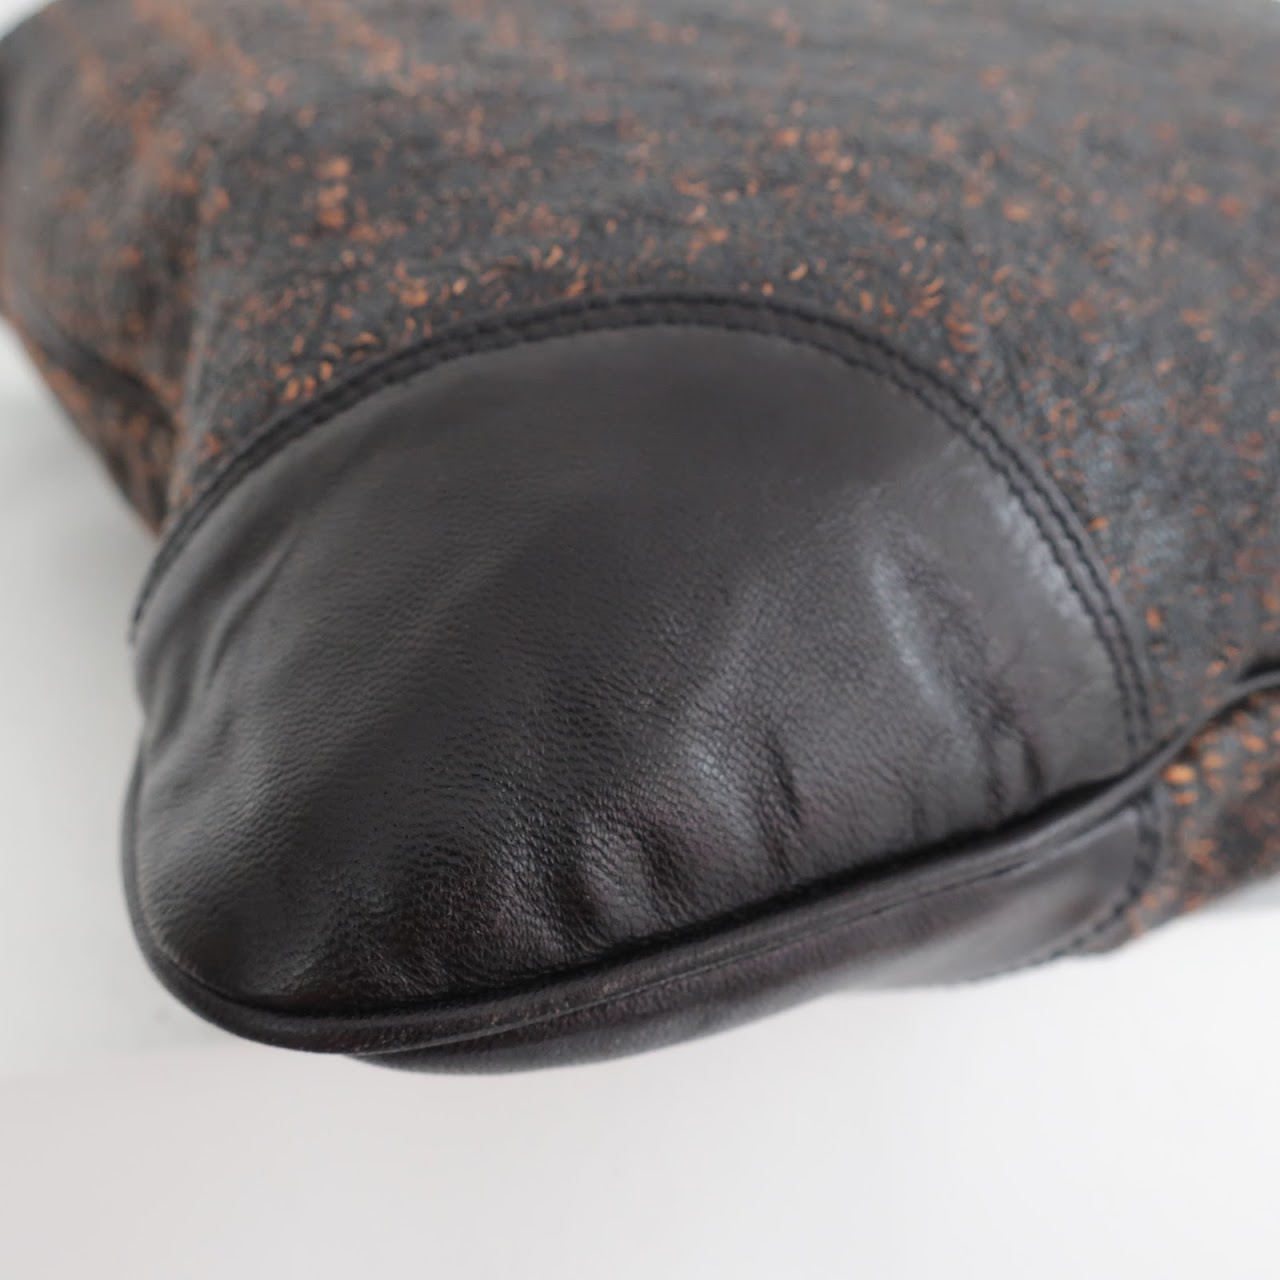 Dries Van Noten NEW Laser Cut Leather Shoulder Bag